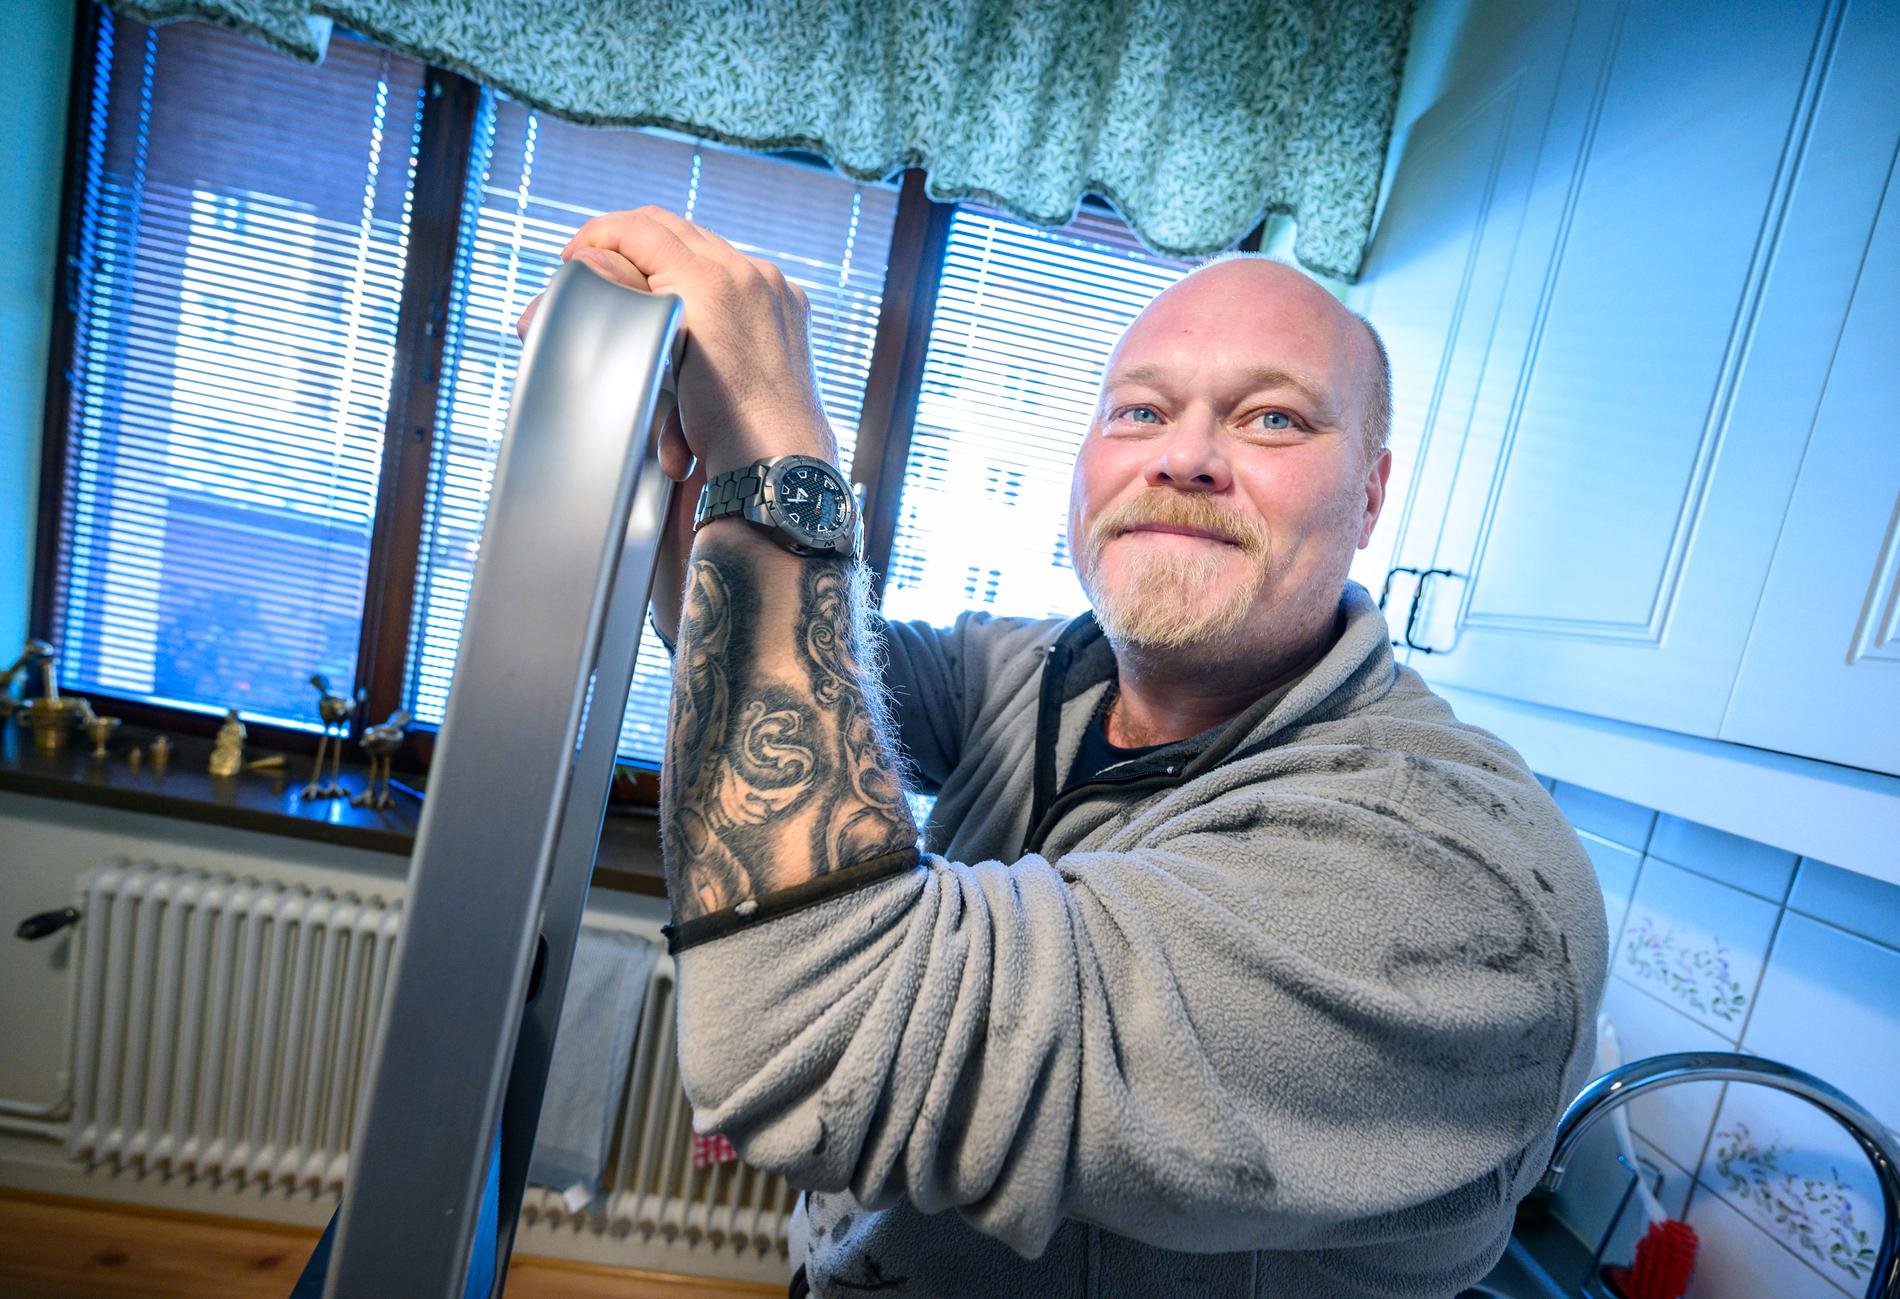 Ystads kommunala fixare Magnus Åkesson uppmanar äldre att undvika situationer i hemarbetet om de riskerar att trilla och skada sig. "Den som går med käpp eller är i 75-årsåldern – den ska be om hjälp", säger han till TT.